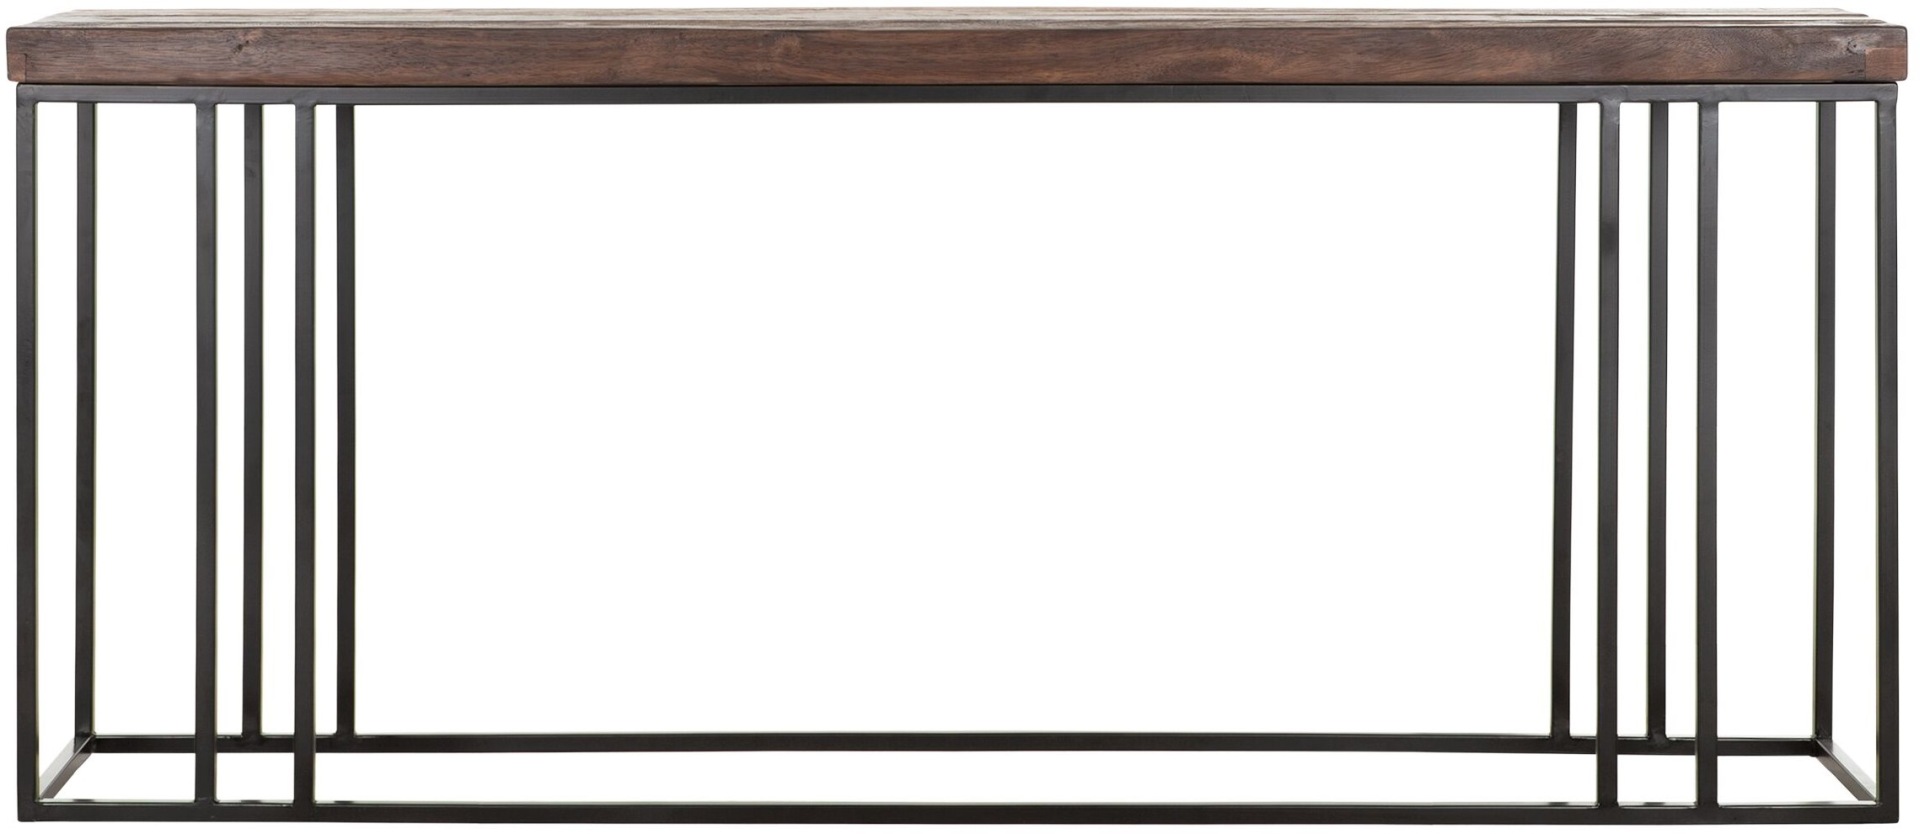 Die Konsole Timber wurde aus verschiedenen Holzarten gefertigt. Das Gestell ist aus Metall uns ist Schwarz. Die Konsole überzeugt mit ihrem massivem aber auch modernem Design. Sie besitzt eine Länge von 180 cm.